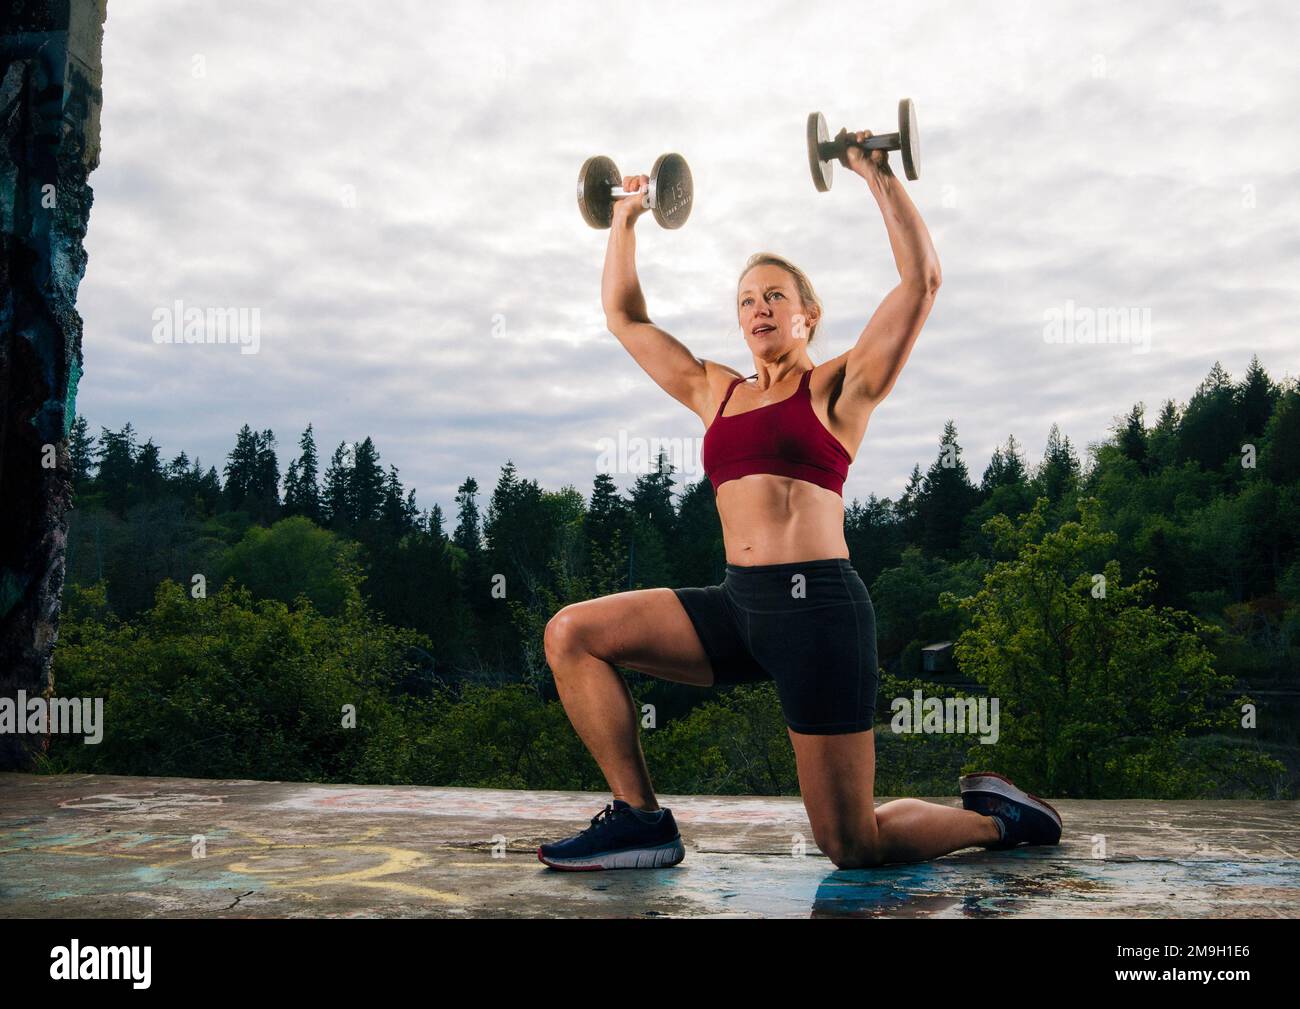 Femme s'exerçant à l'extérieur avec des haltères, Bainbridge Island, Washington, États-Unis Banque D'Images